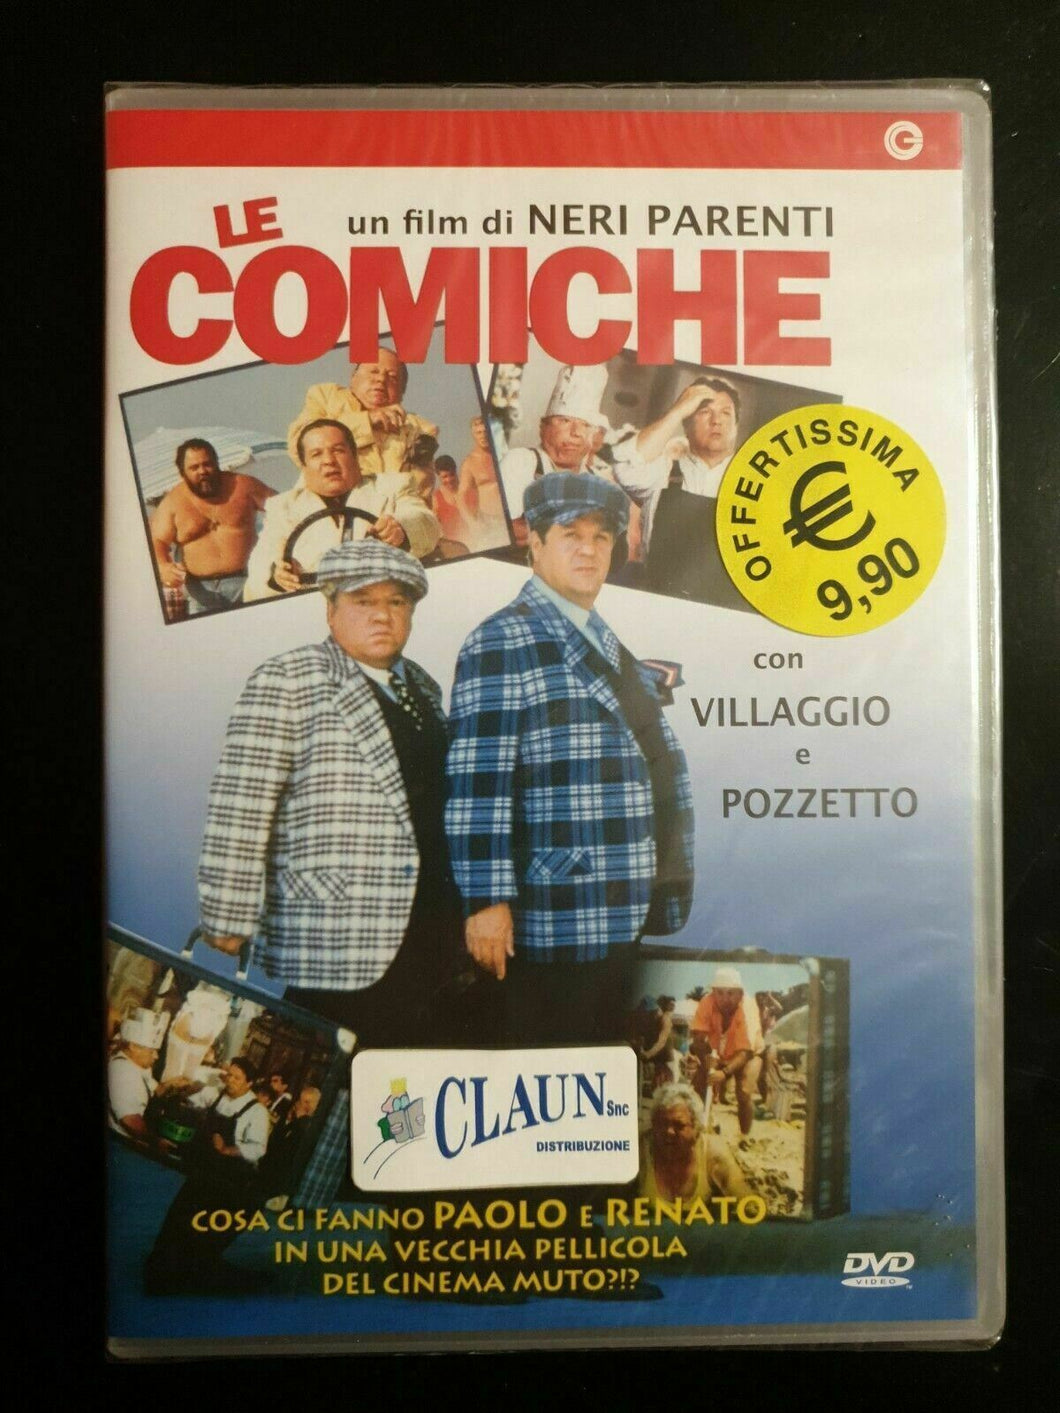 Le comiche (1990) Villaggio e Pozzetto DVD Nuovo